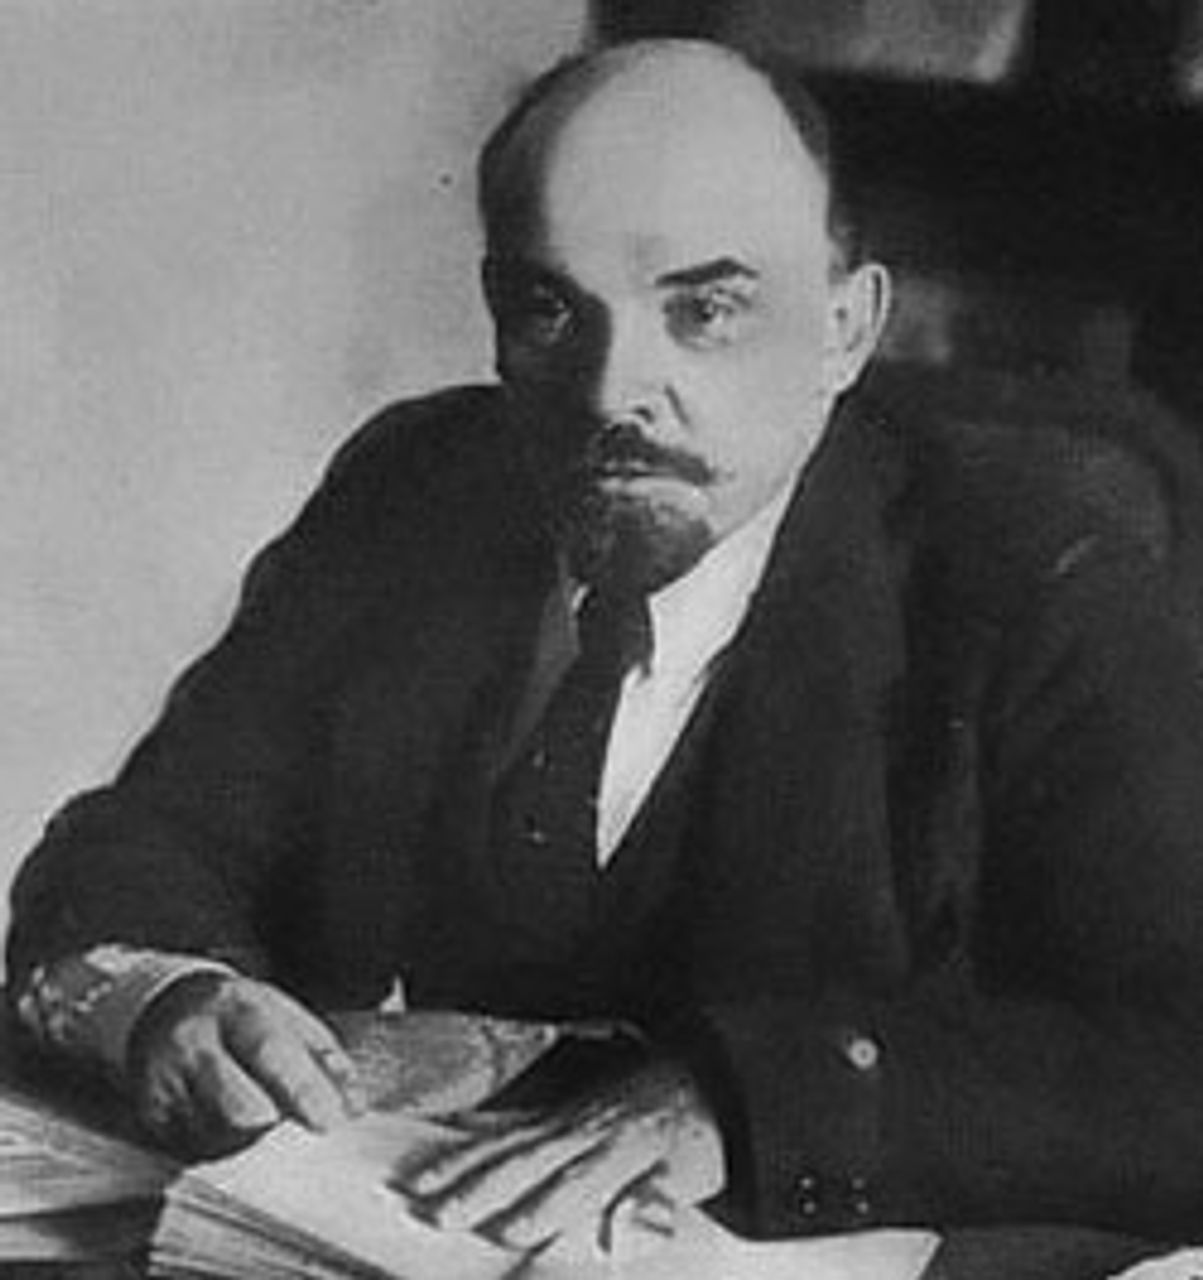 Lenin at his desk in 1919